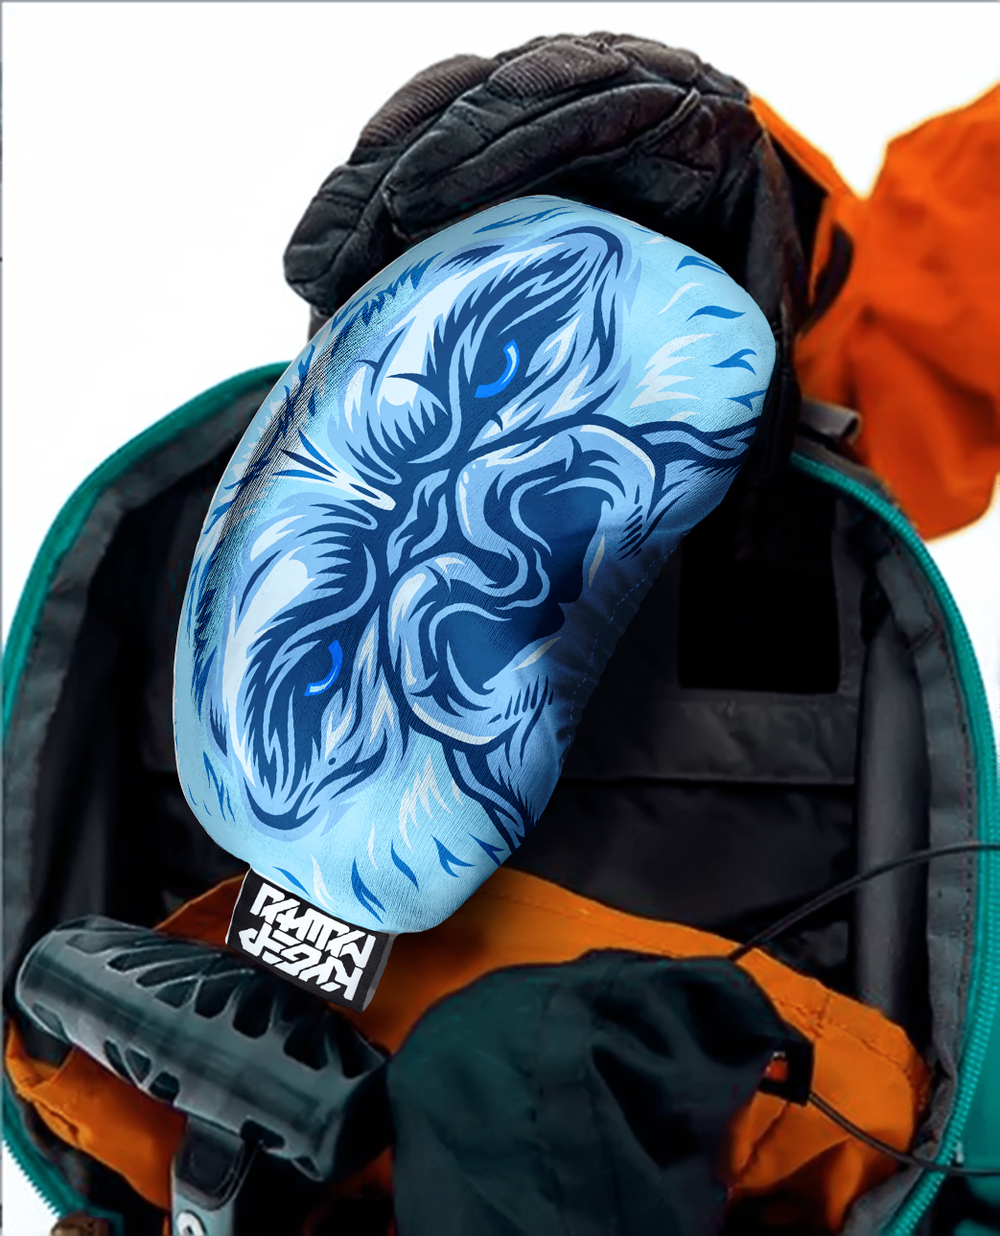 чехол для маски; чехол на маску; cover goggles; сноуборд маска; лыжная маска; защита лыжной маски; чехол на горнолыжную маску, сноубордическая маска; подарок сноубордисту; подарок лыжнику; экипировка сноубордиста; защита маски от царапин; кейс для маски;